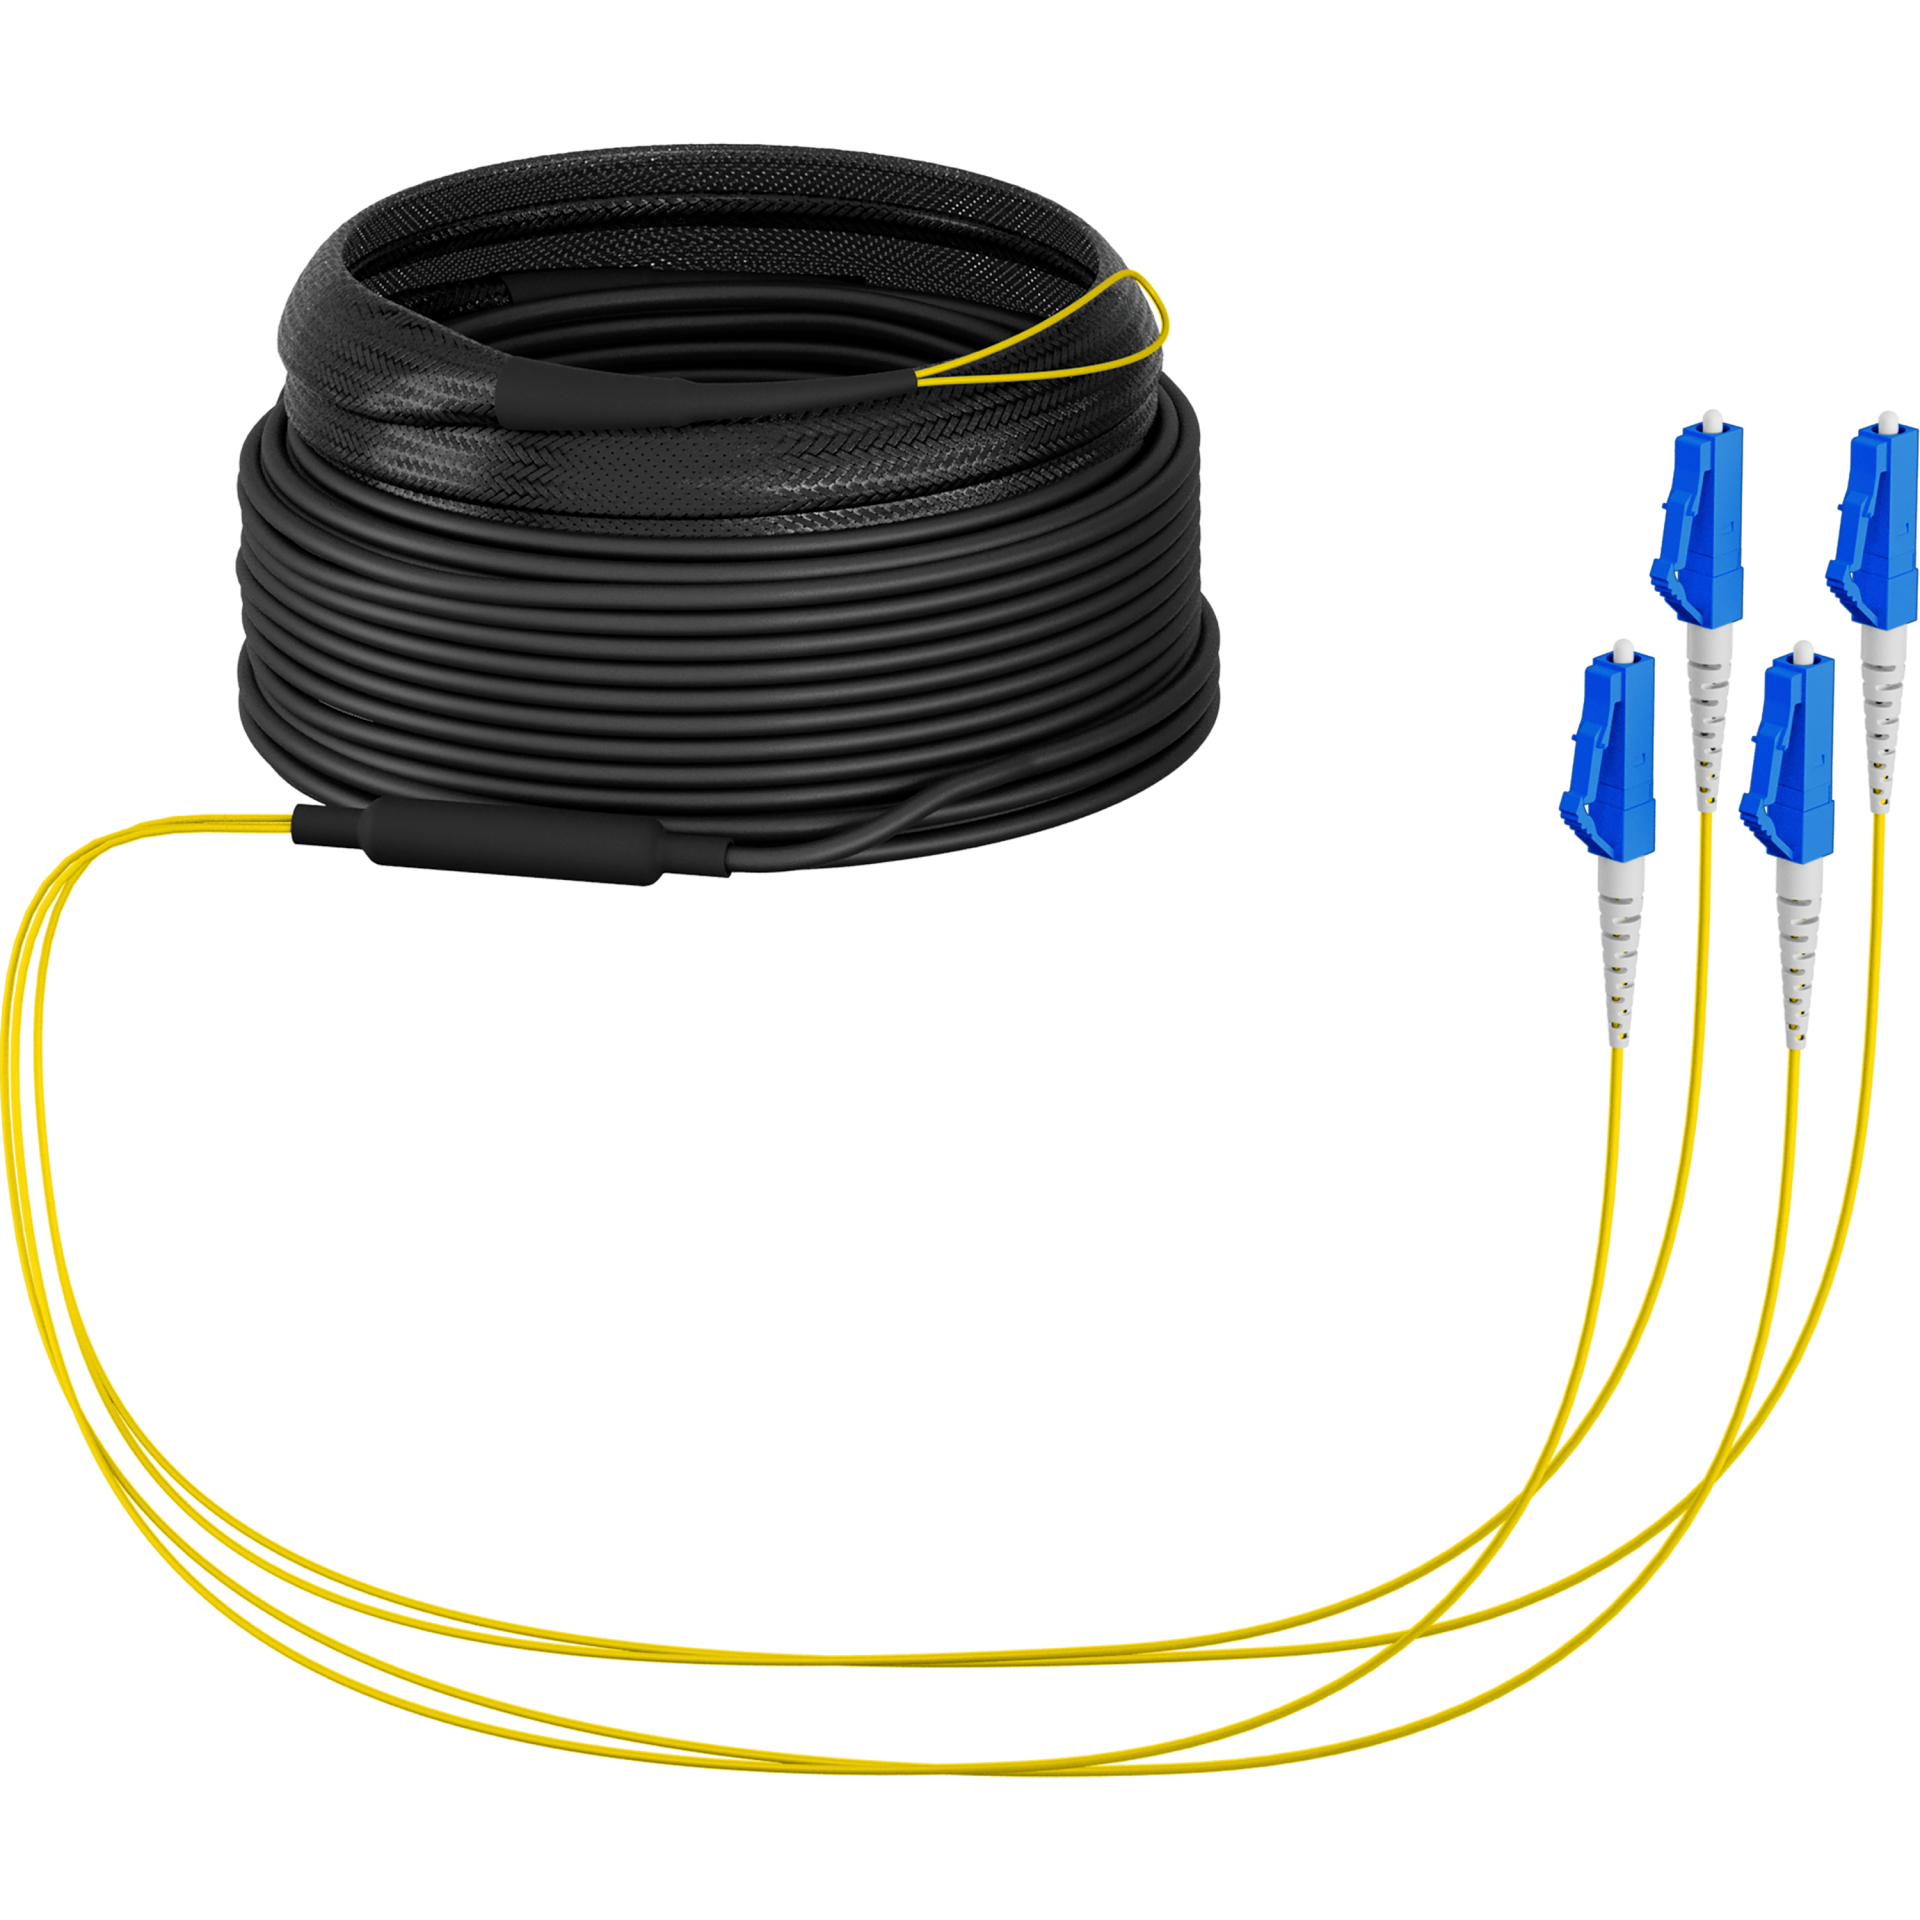 Trunk cable U-DQ(ZN)BH OS2 4E (1x4) LC-LC,30m Dca LSZH G675A1